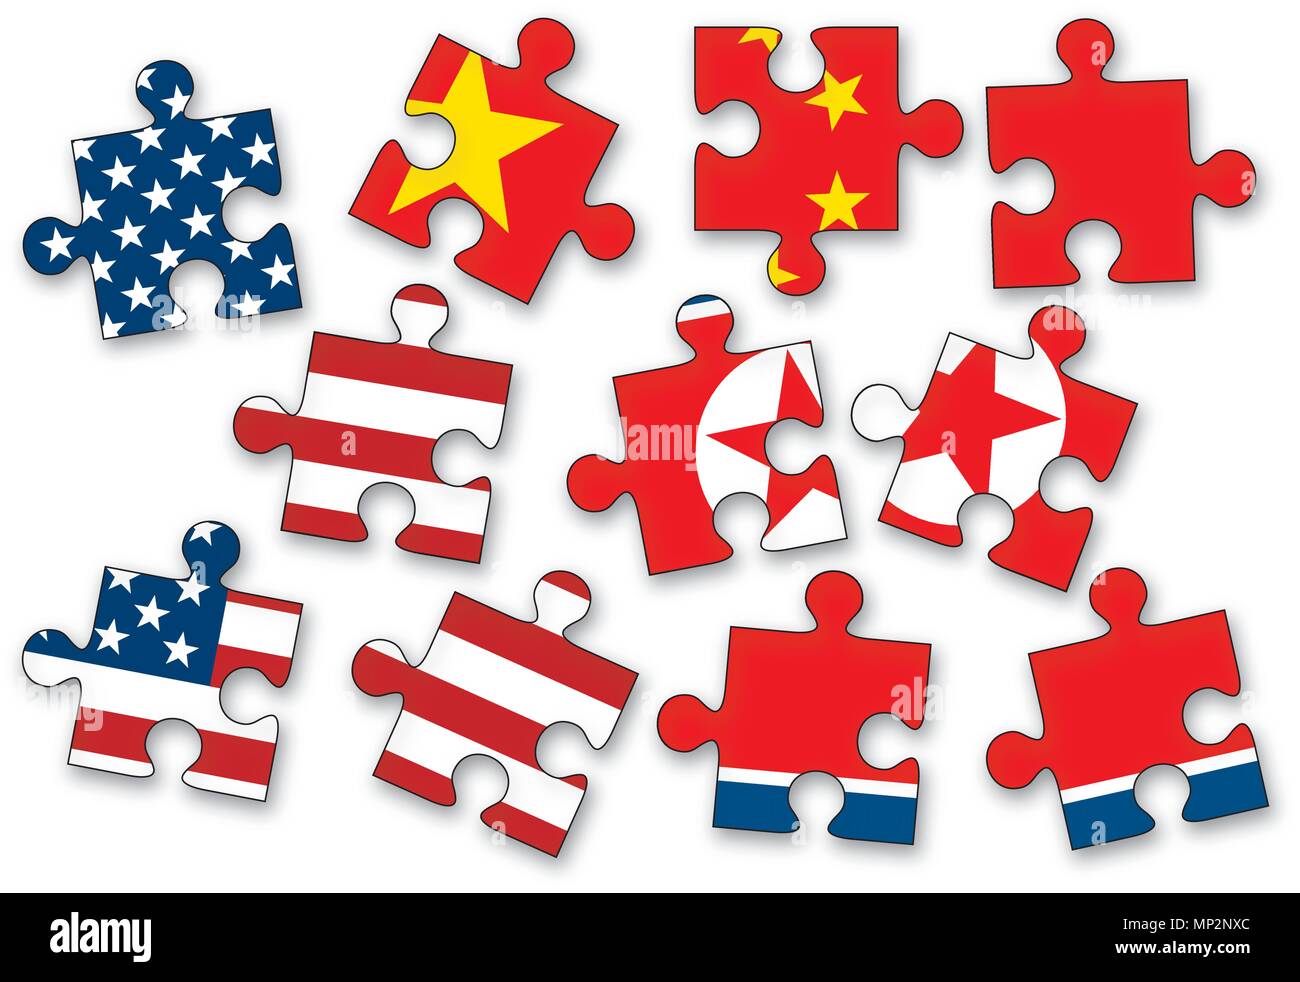 Aux Etats-Unis, la Chine et la Corée du Nord comme une scie sauteuse pièces de puzzle avec les drapeaux des États-Unis d'Amérique, la Chine et la Corée du Nord isolé sur fond blanc. Illustration de Vecteur